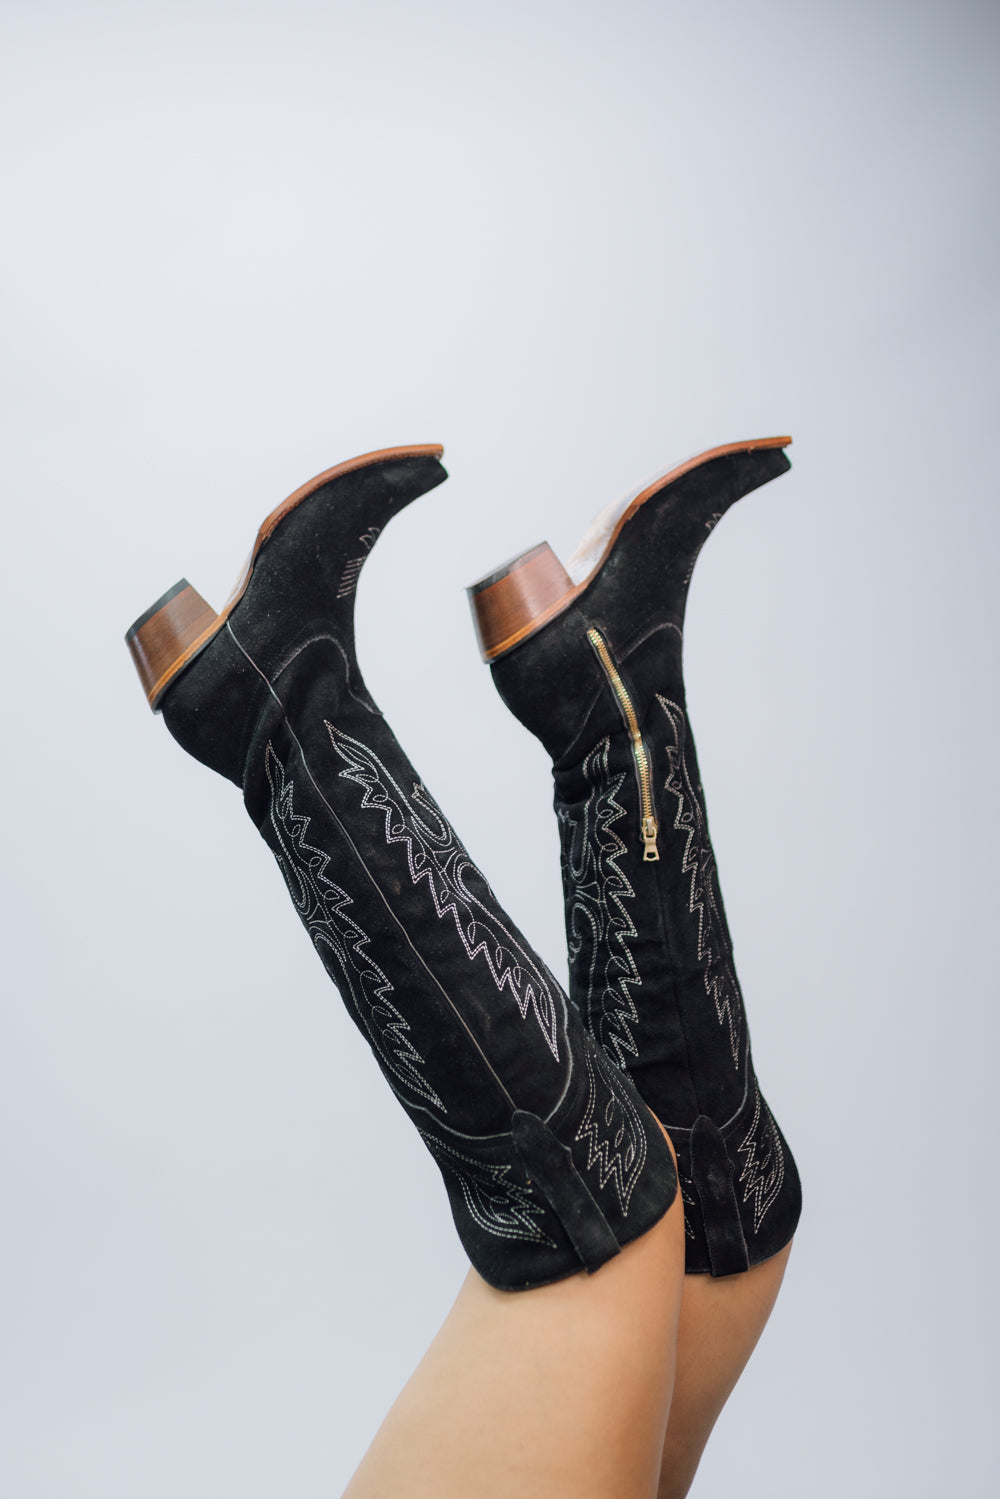 The Victoria XL Gamuza Cowgirl Boot